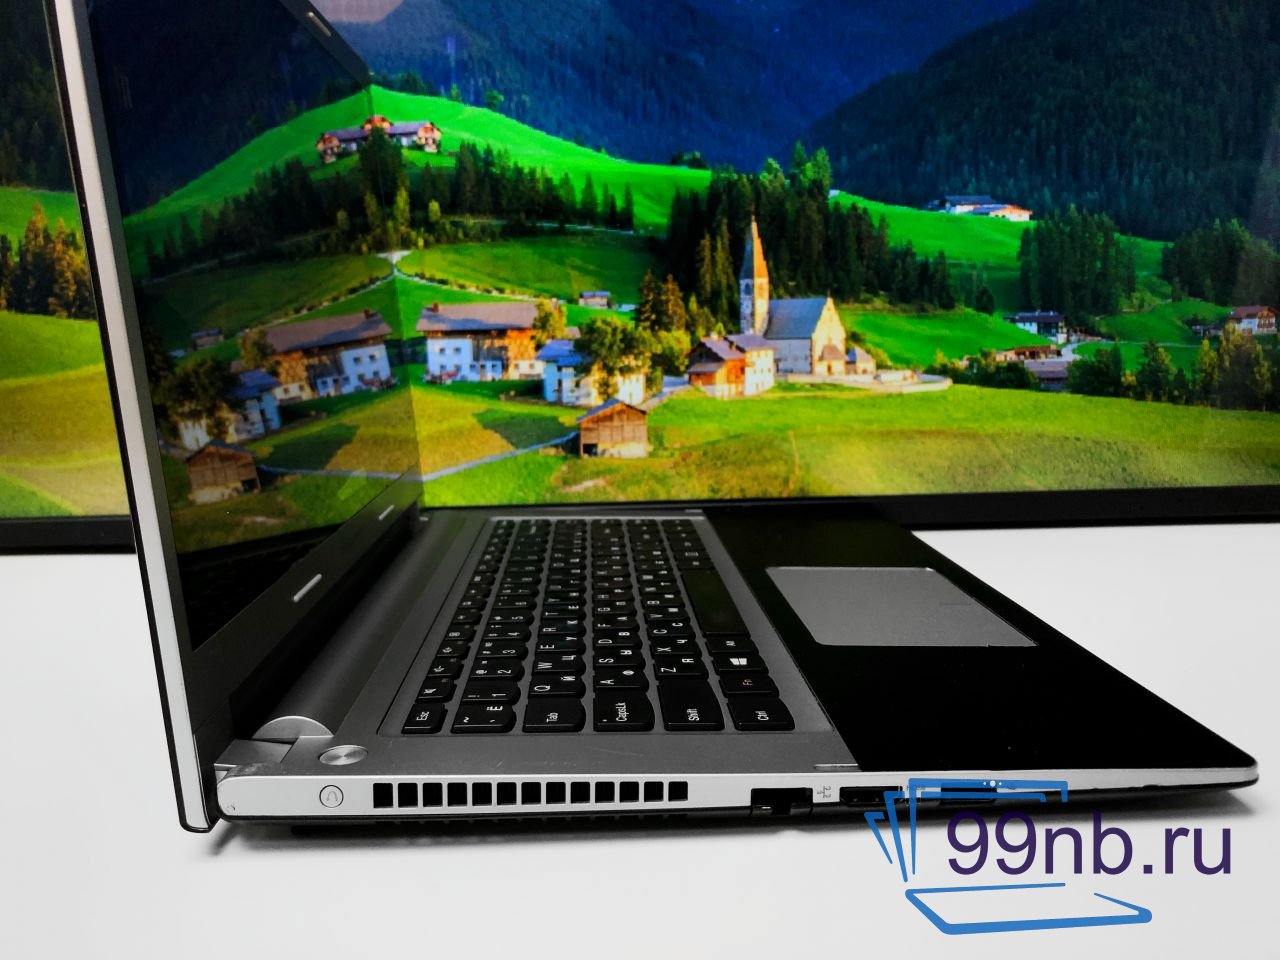  Ноутбук для поездок Lenovo с гарантией